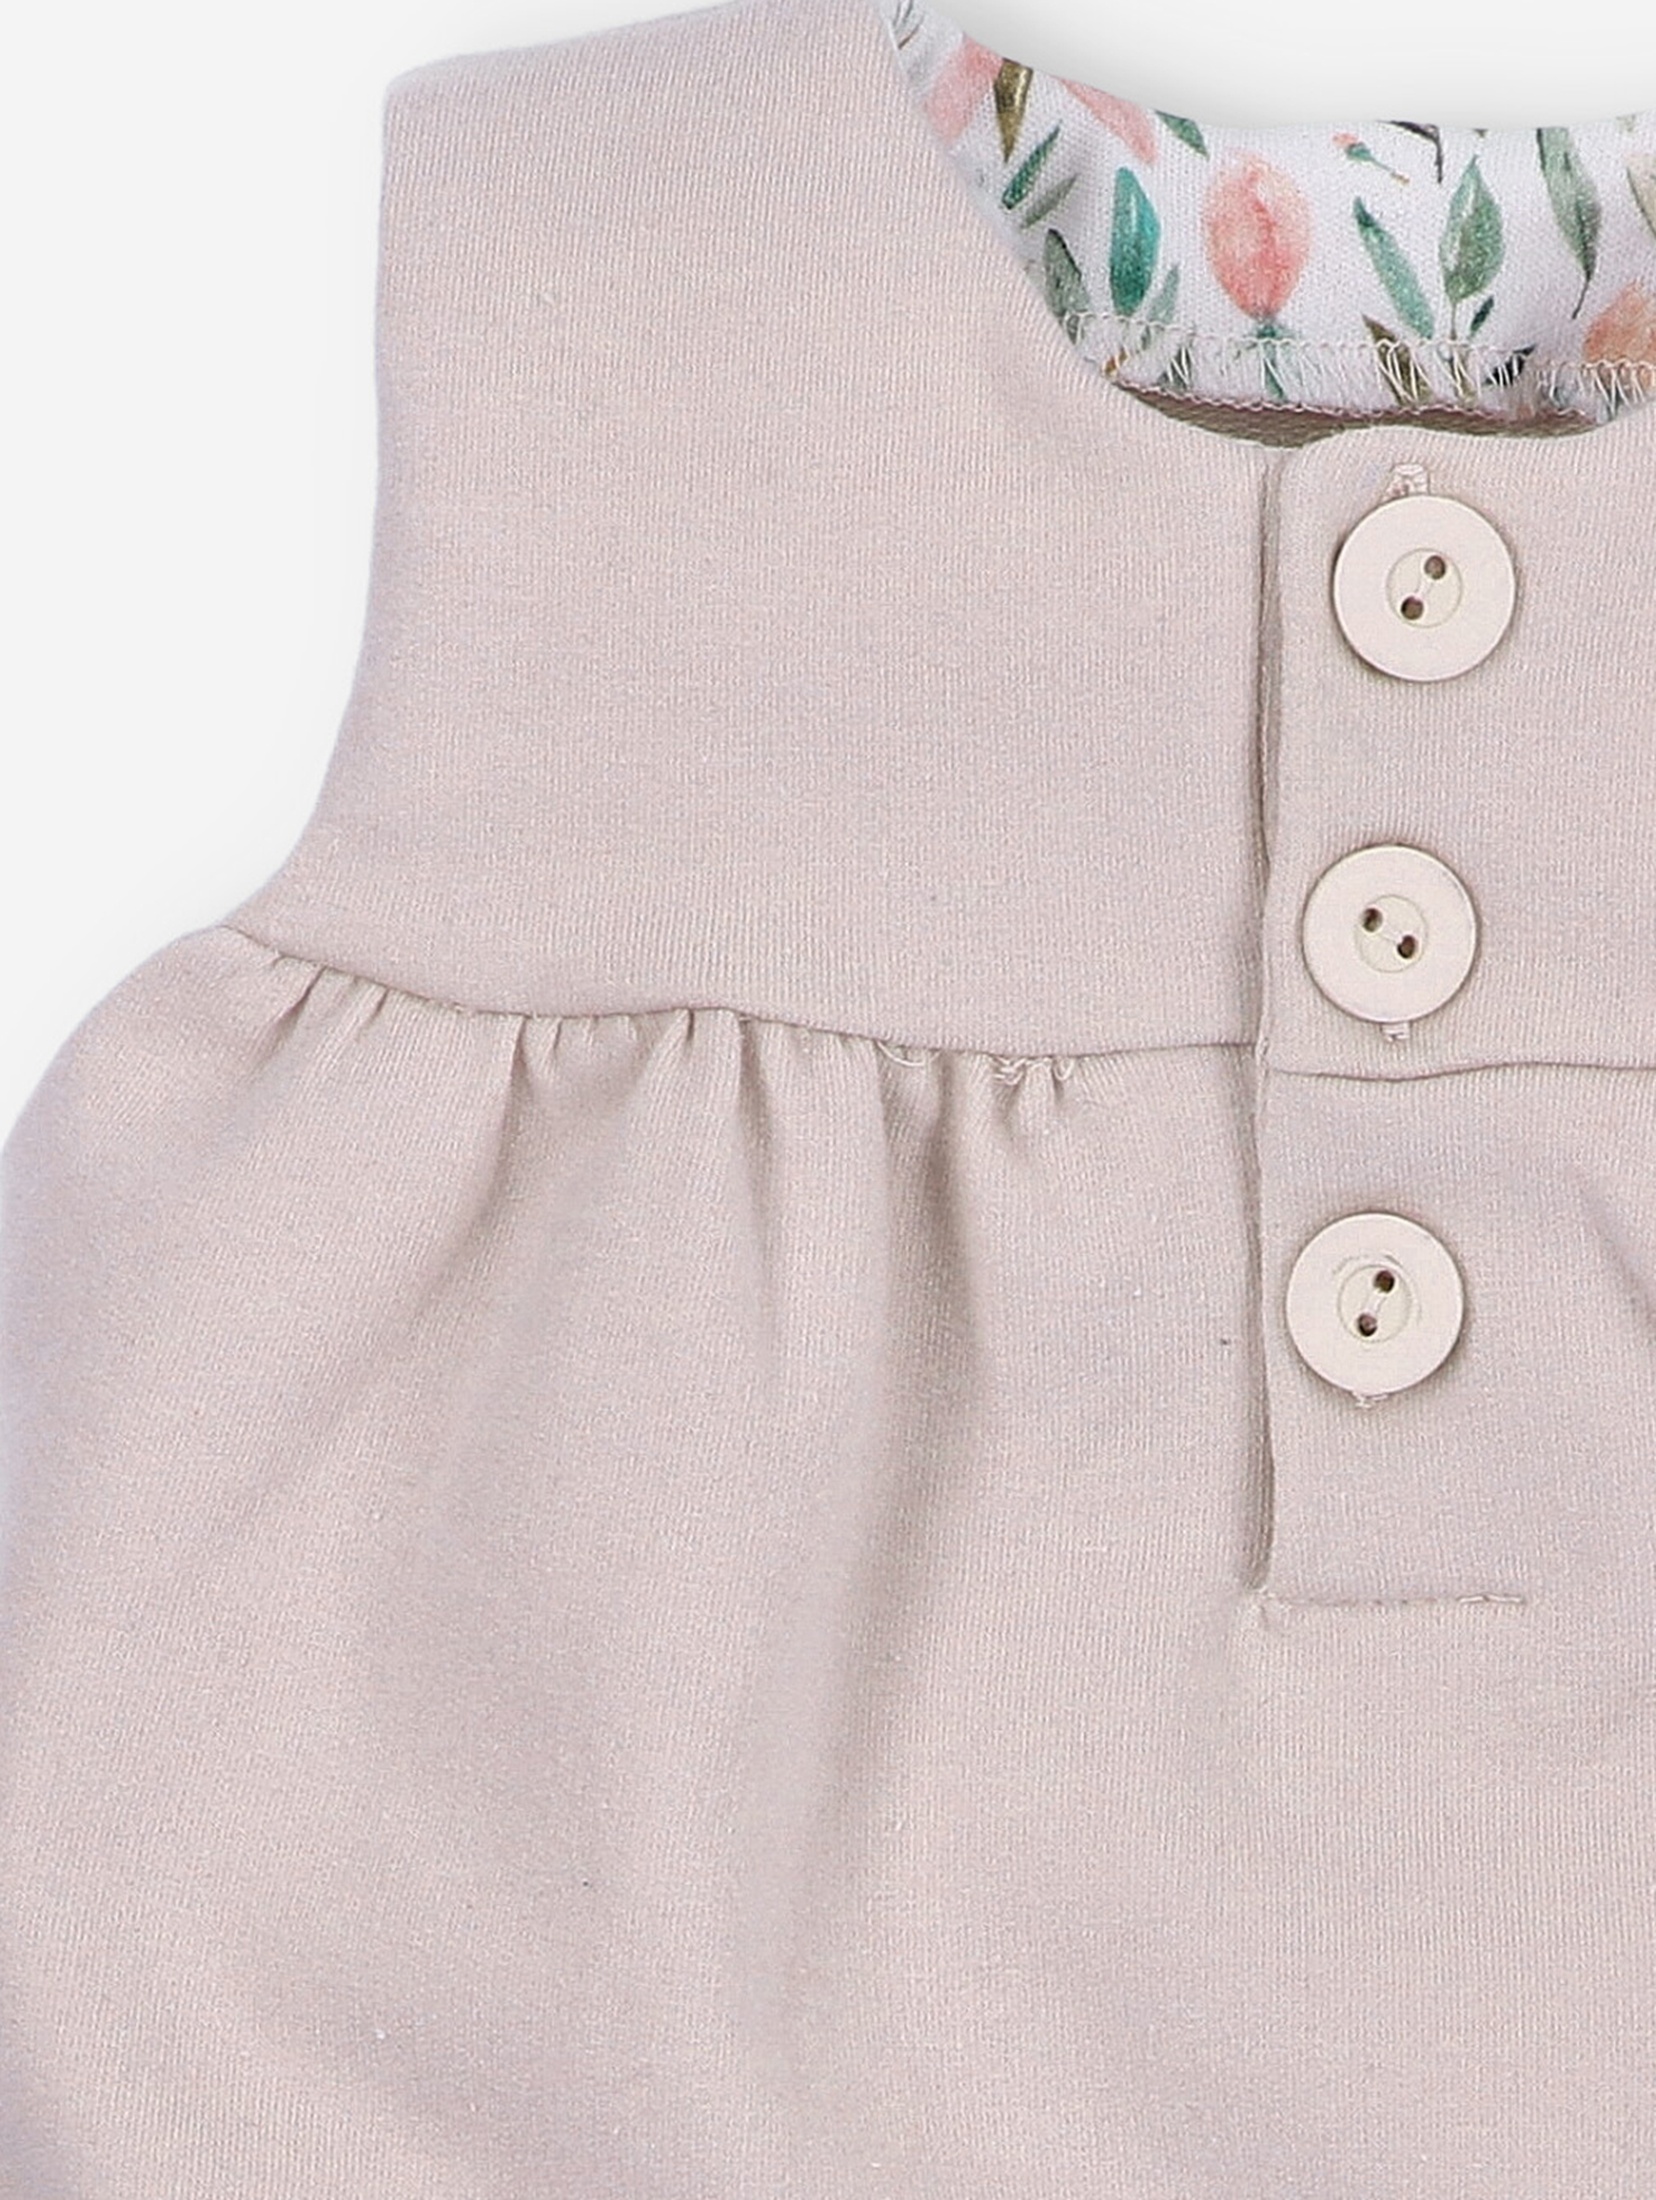 Różowa sukienka niemowlęca na ramiączkach PINK FLOWERS z bawełny organicznej